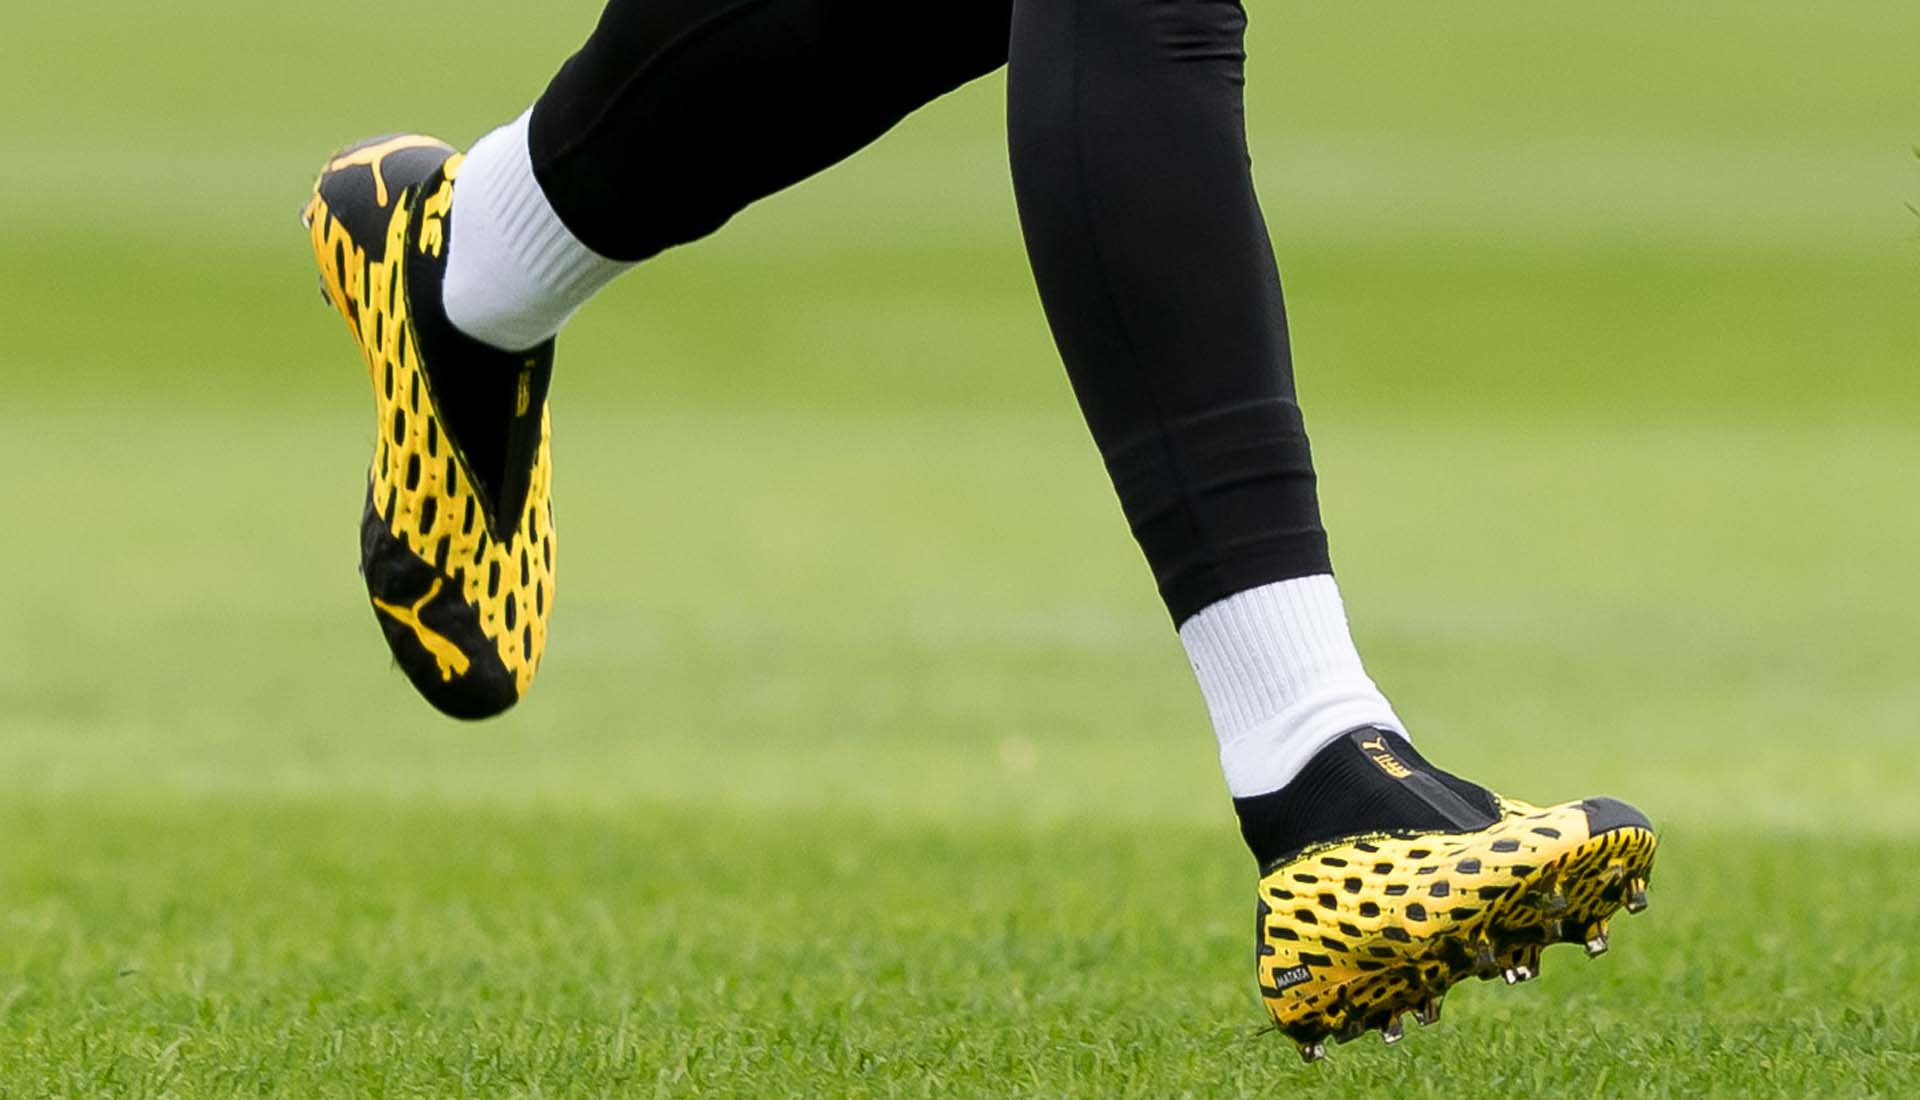 Giày bóng đá thường chắc chân đến mức không buộc dây vẫn có thể chơi bóng được